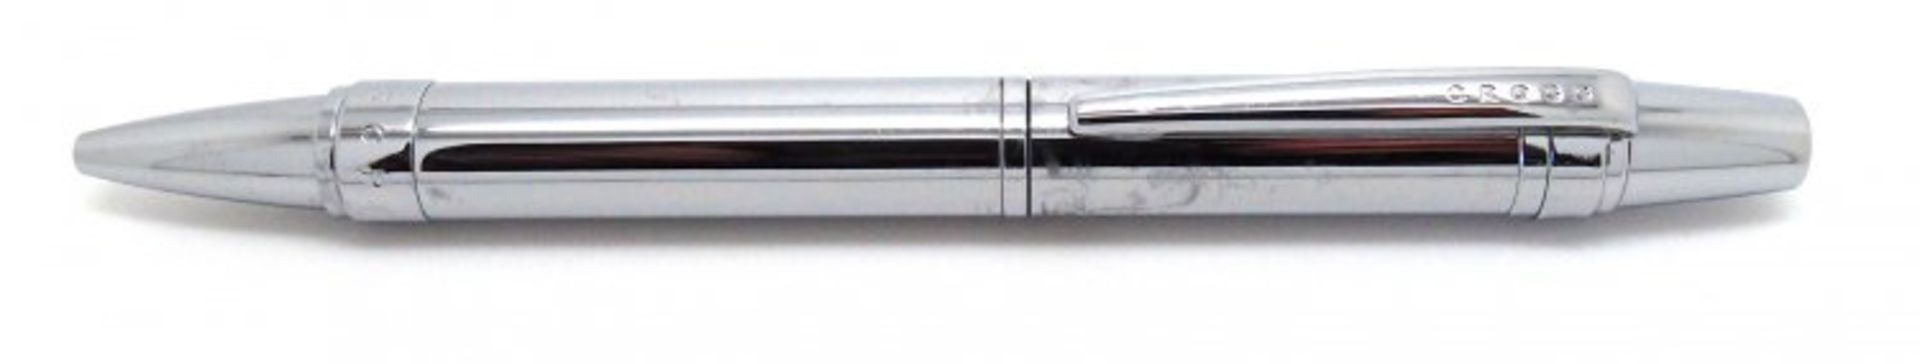 V Brand New Cross Nile Pure Chrome Ballpoint Pen ISP £27.90 (Ebay) - Image 2 of 2